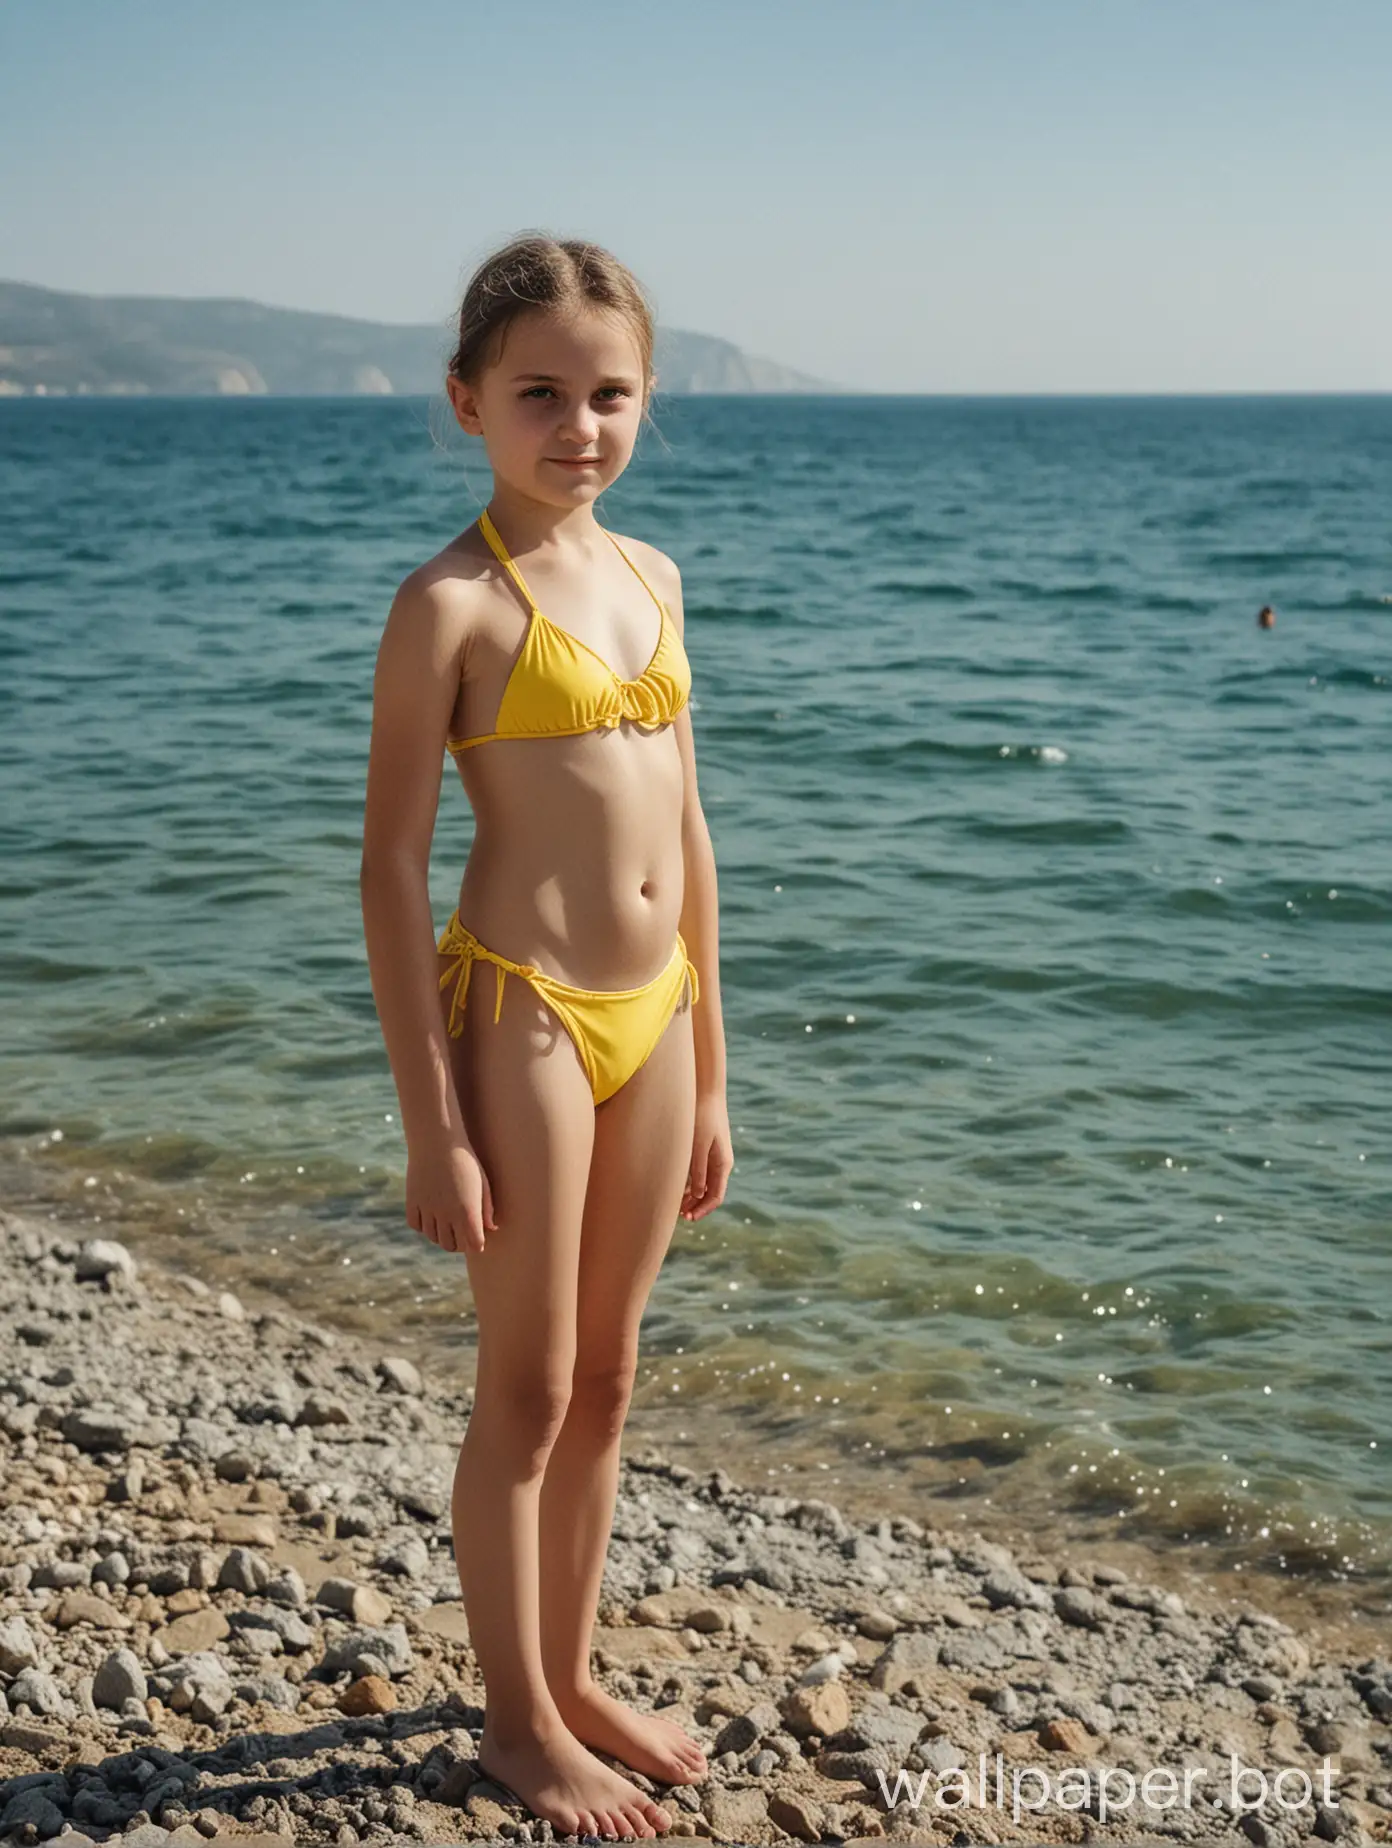 Scenic-Crimea-12YearOld-Girl-Enjoying-the-Sea-in-a-Vibrant-Yellow-Bikini